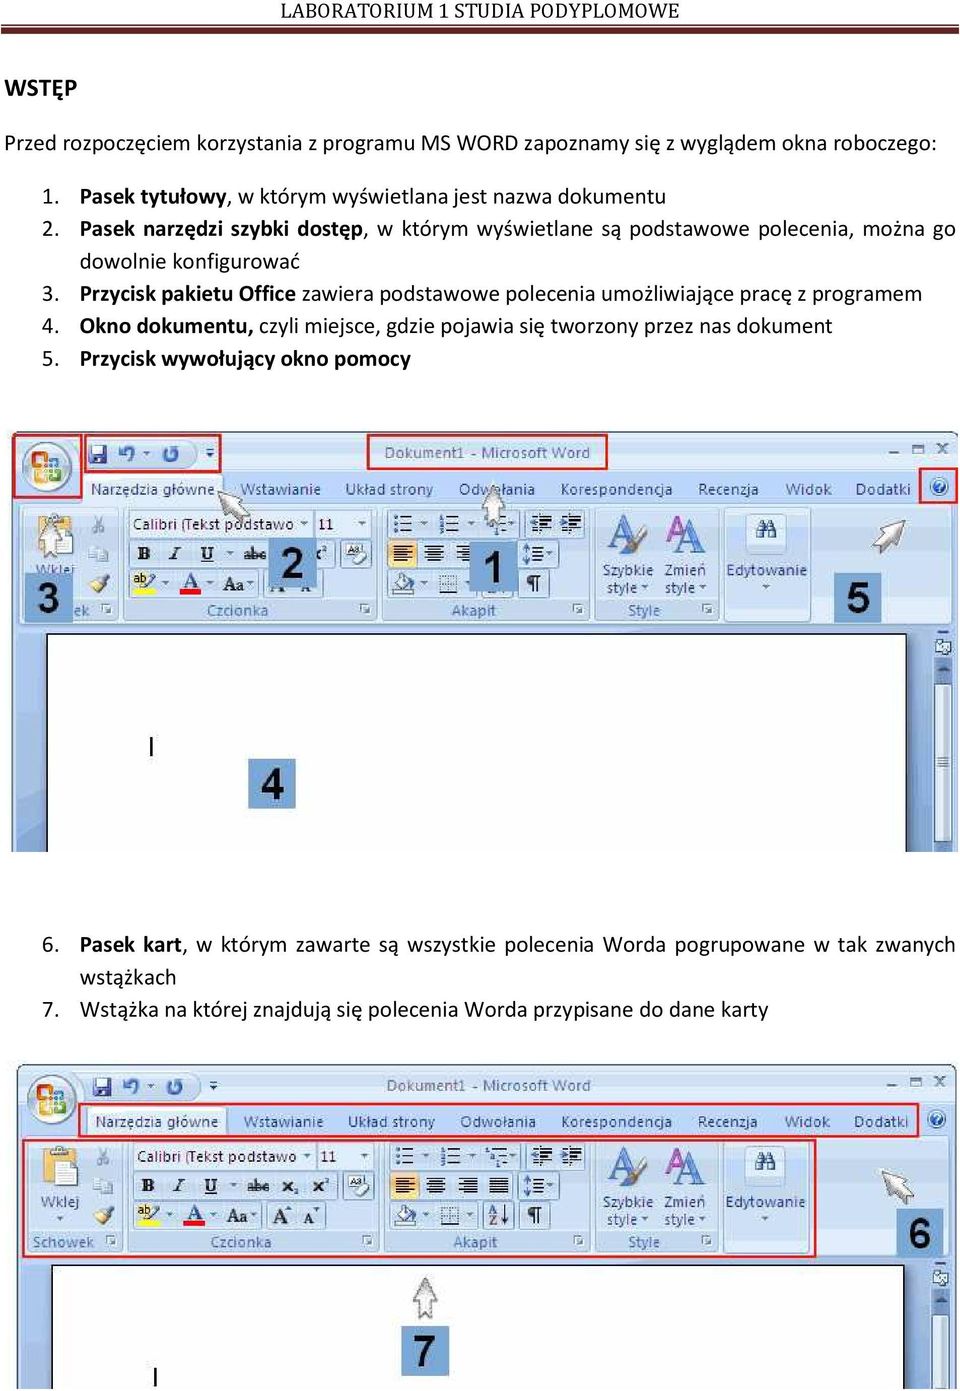 Przycisk pakietu Office zawiera podstawowe polecenia umożliwiające pracę z programem 4.